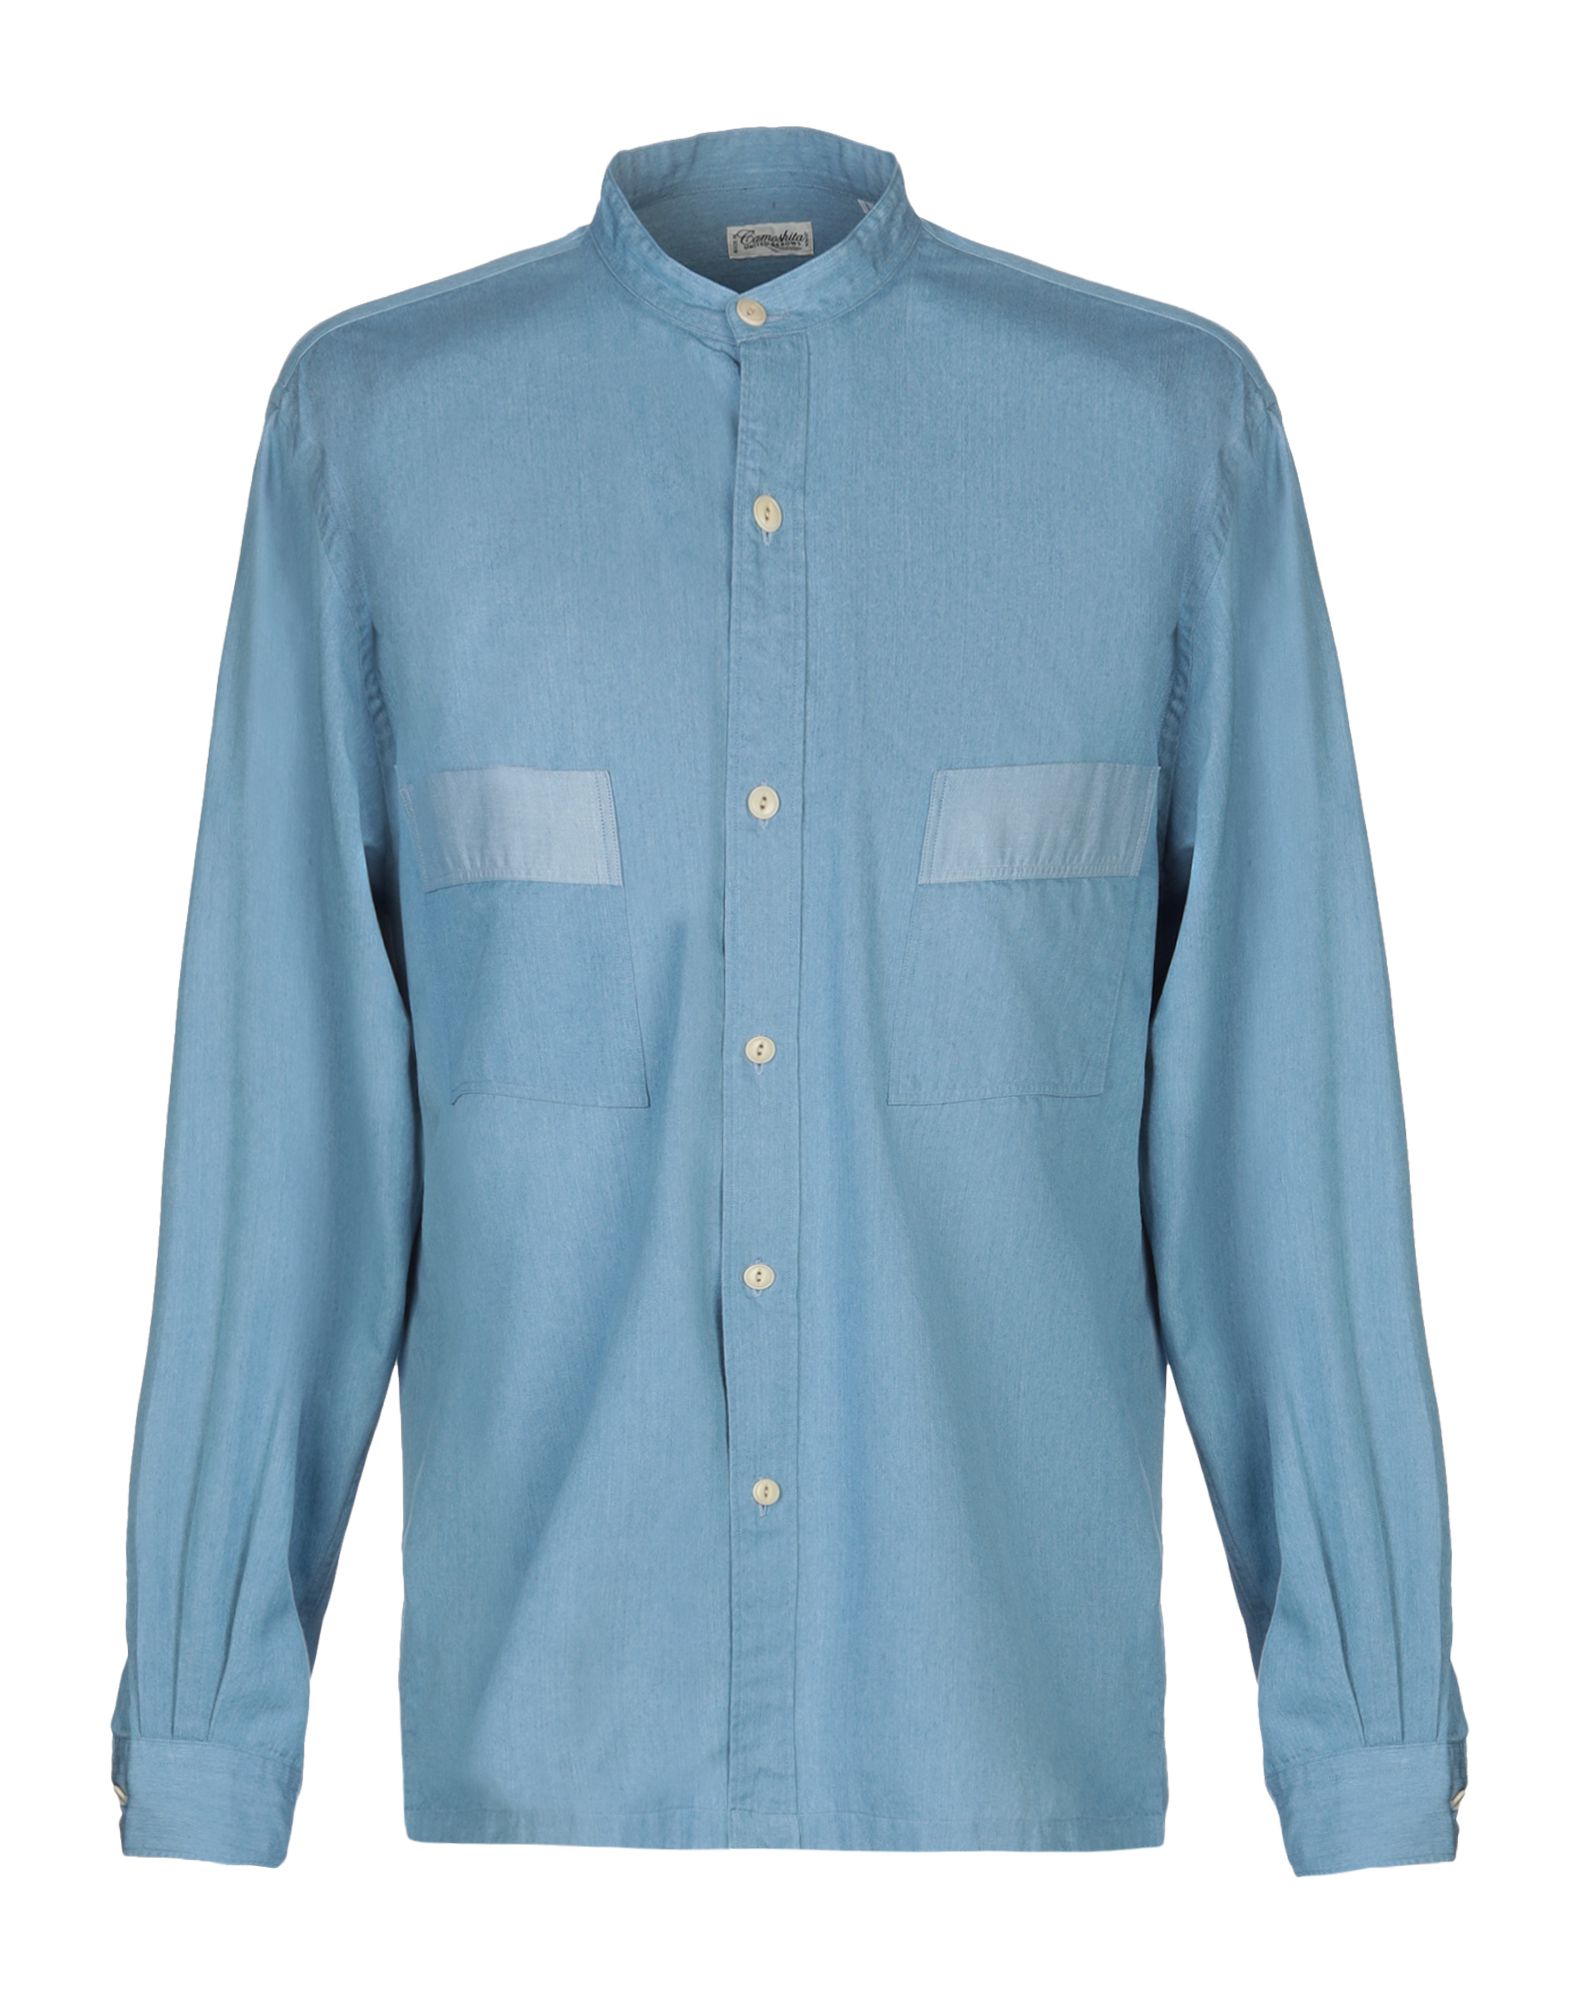 《送料無料》CAMOSHITA by UNITED ARROWS メンズ デニムシャツ ブルー L コットン 100%